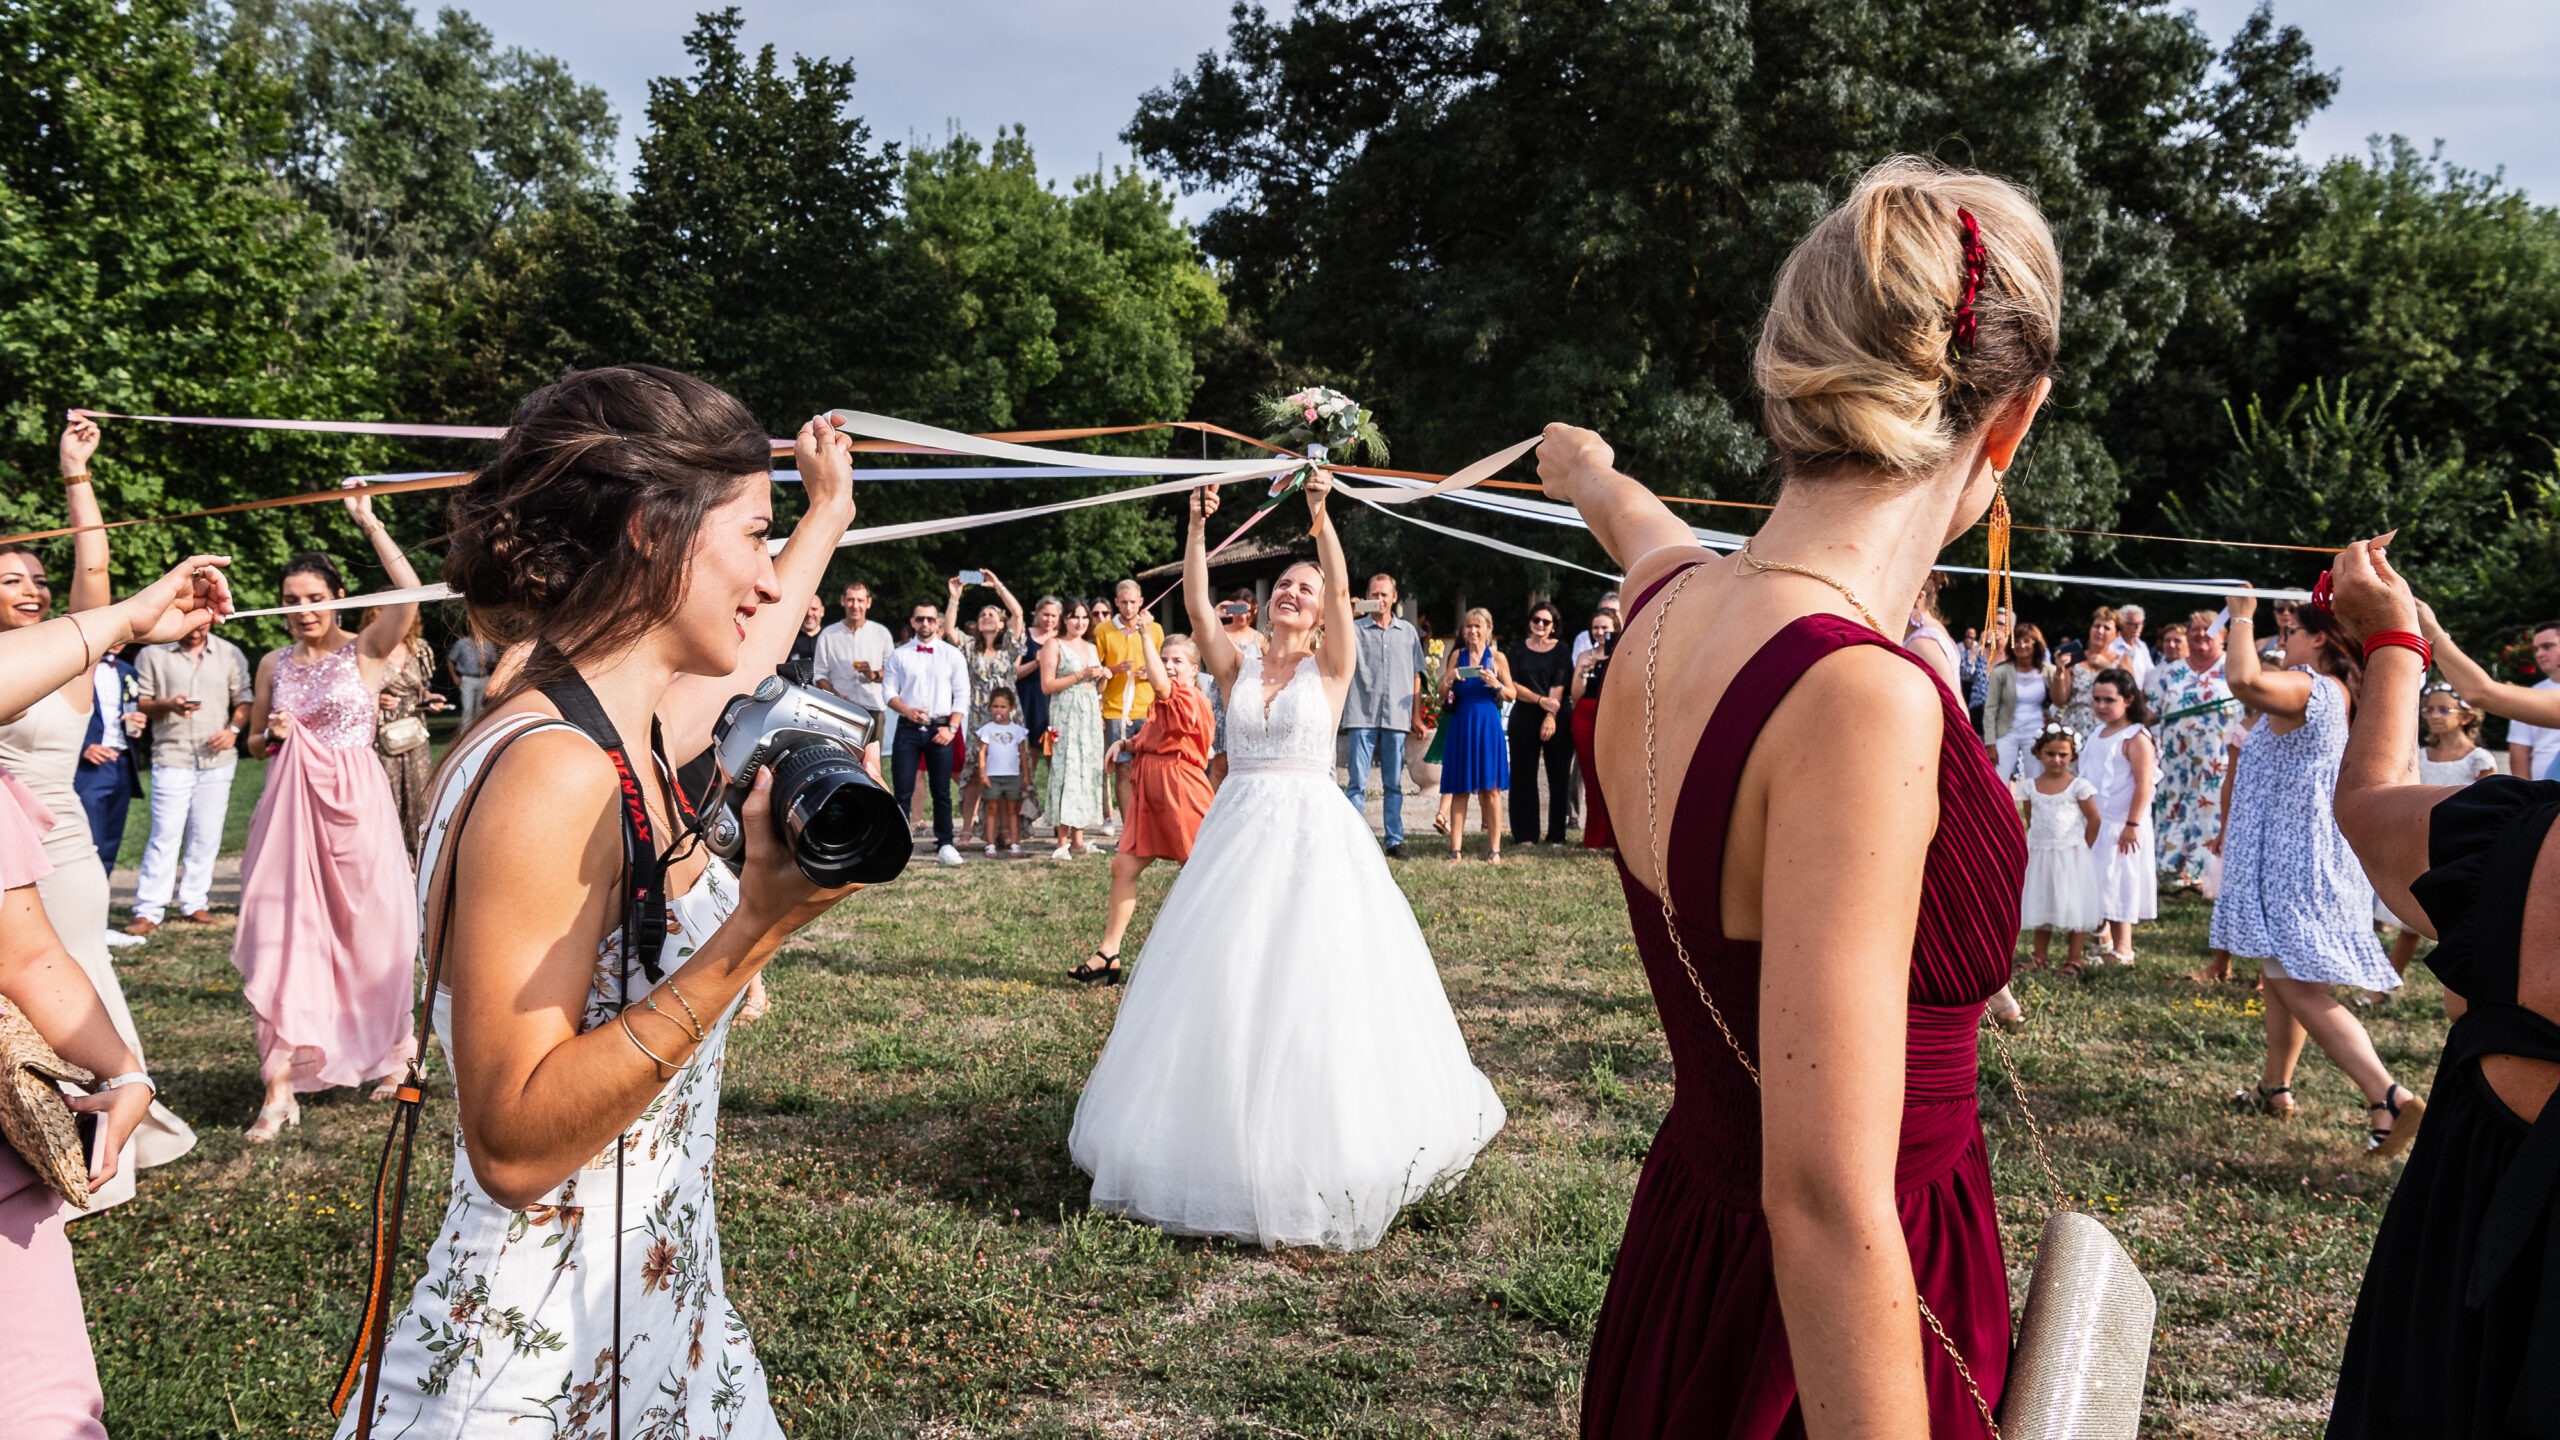 Au lancer du bouquet de la mariée, les filles font le jeu du ruban.